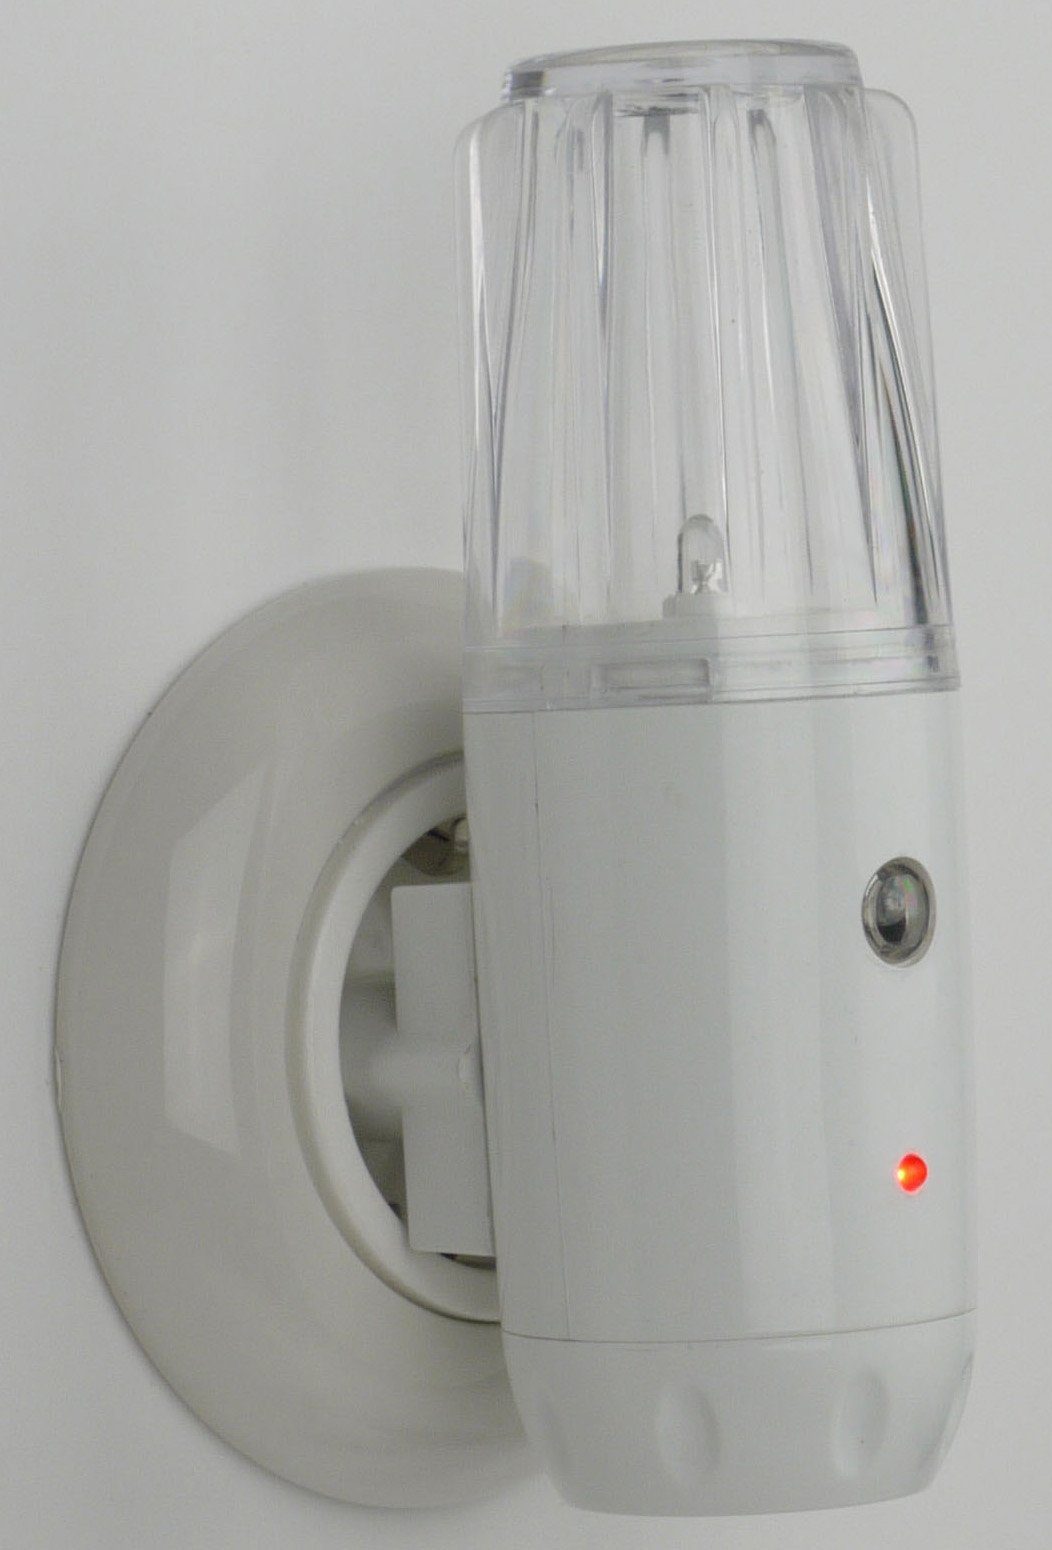 2 Oval integriert, fest Dämmerungssensor Stecker- Stück Nachtlicht niermann Set aus LED Nachtlicht mit Nachtlichter, LED